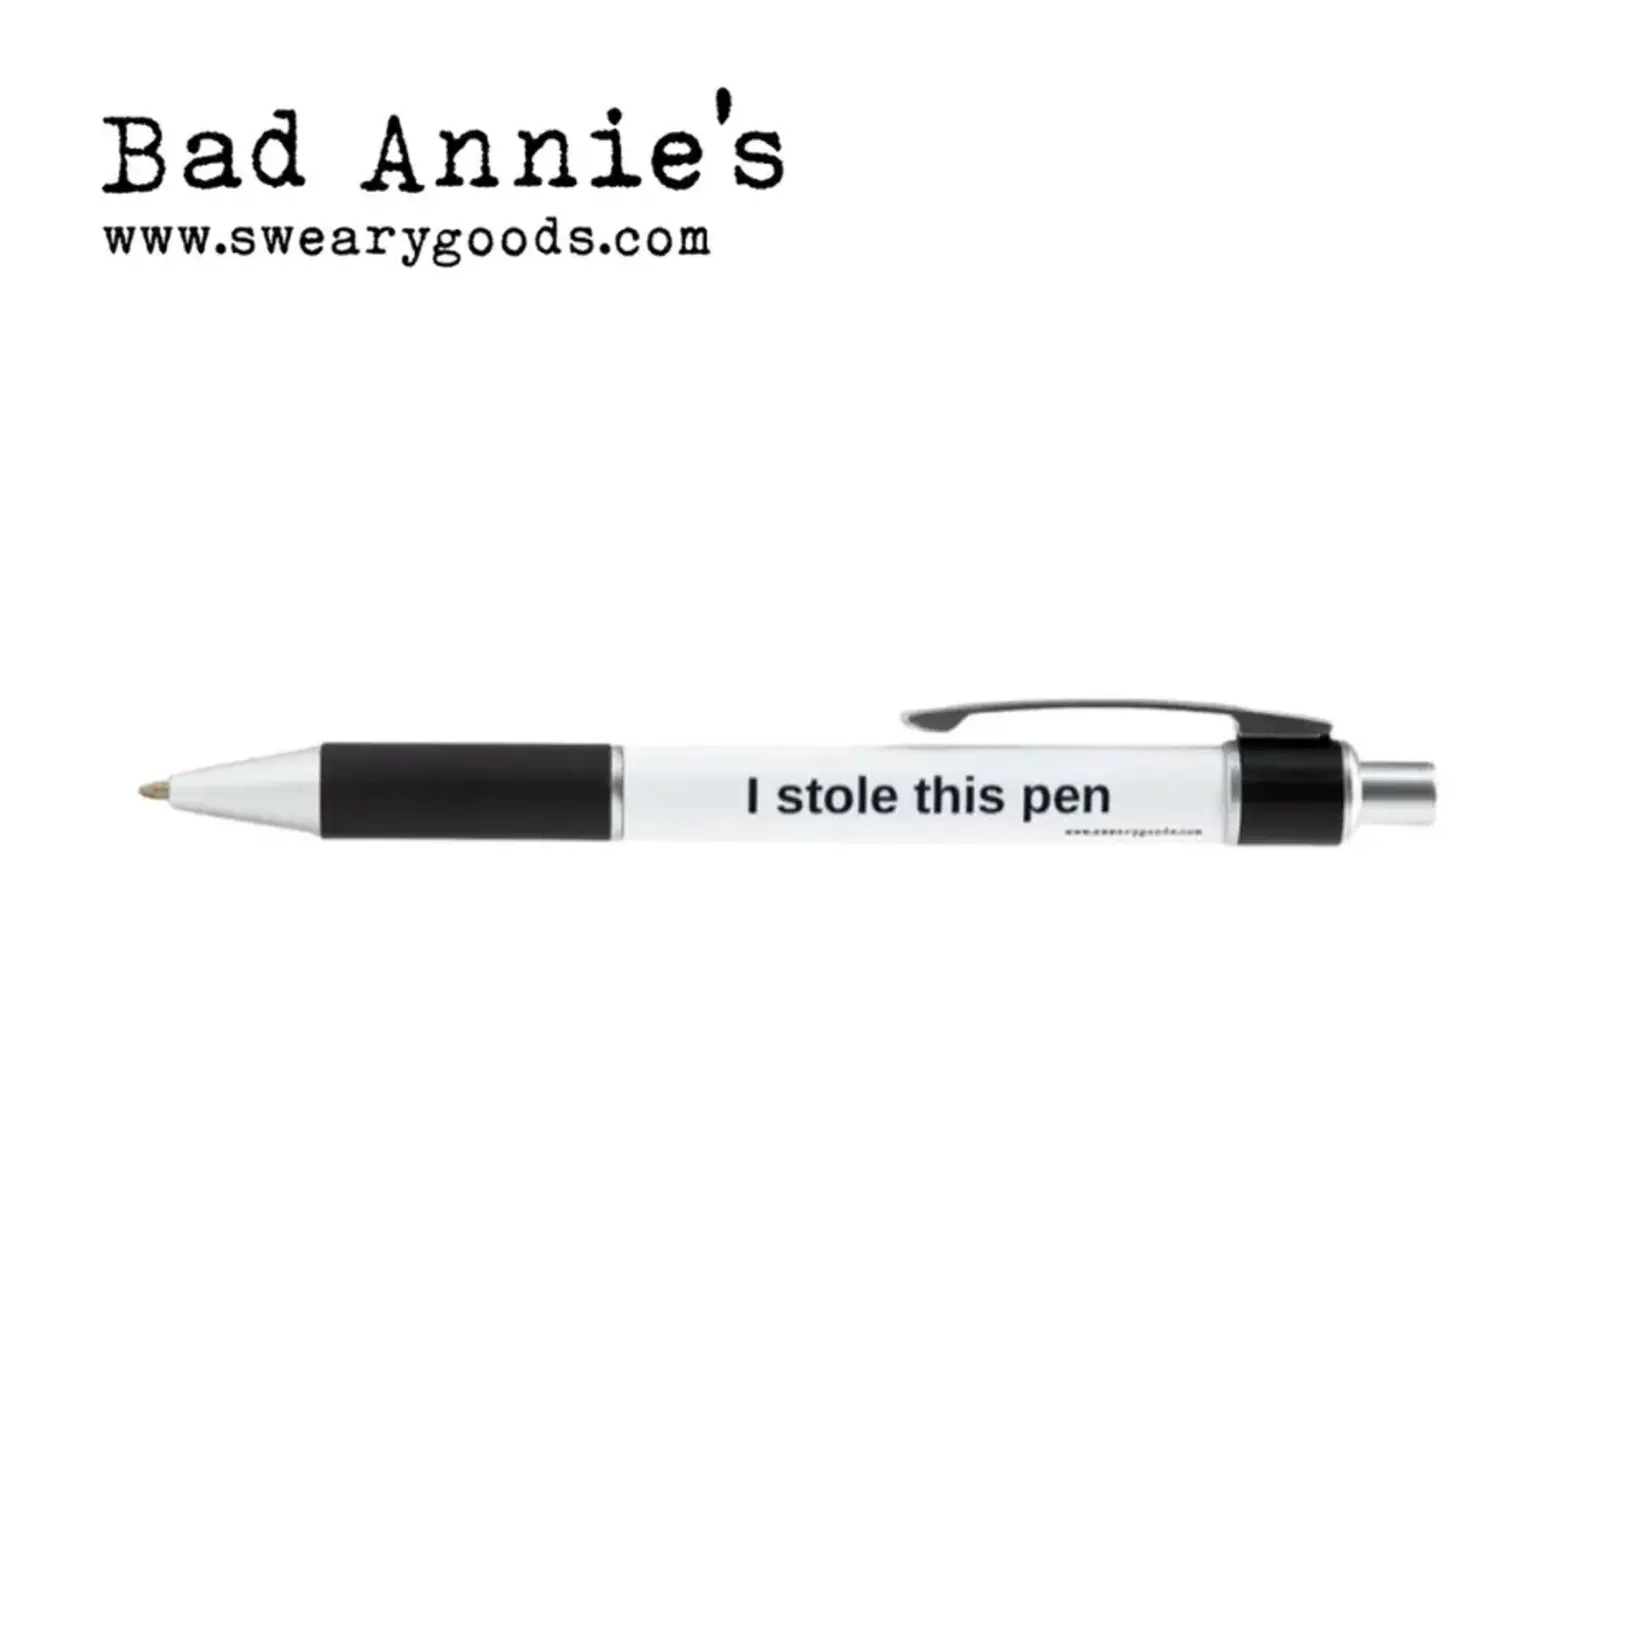 Bad Annie’s Pen - I Stole This Pen